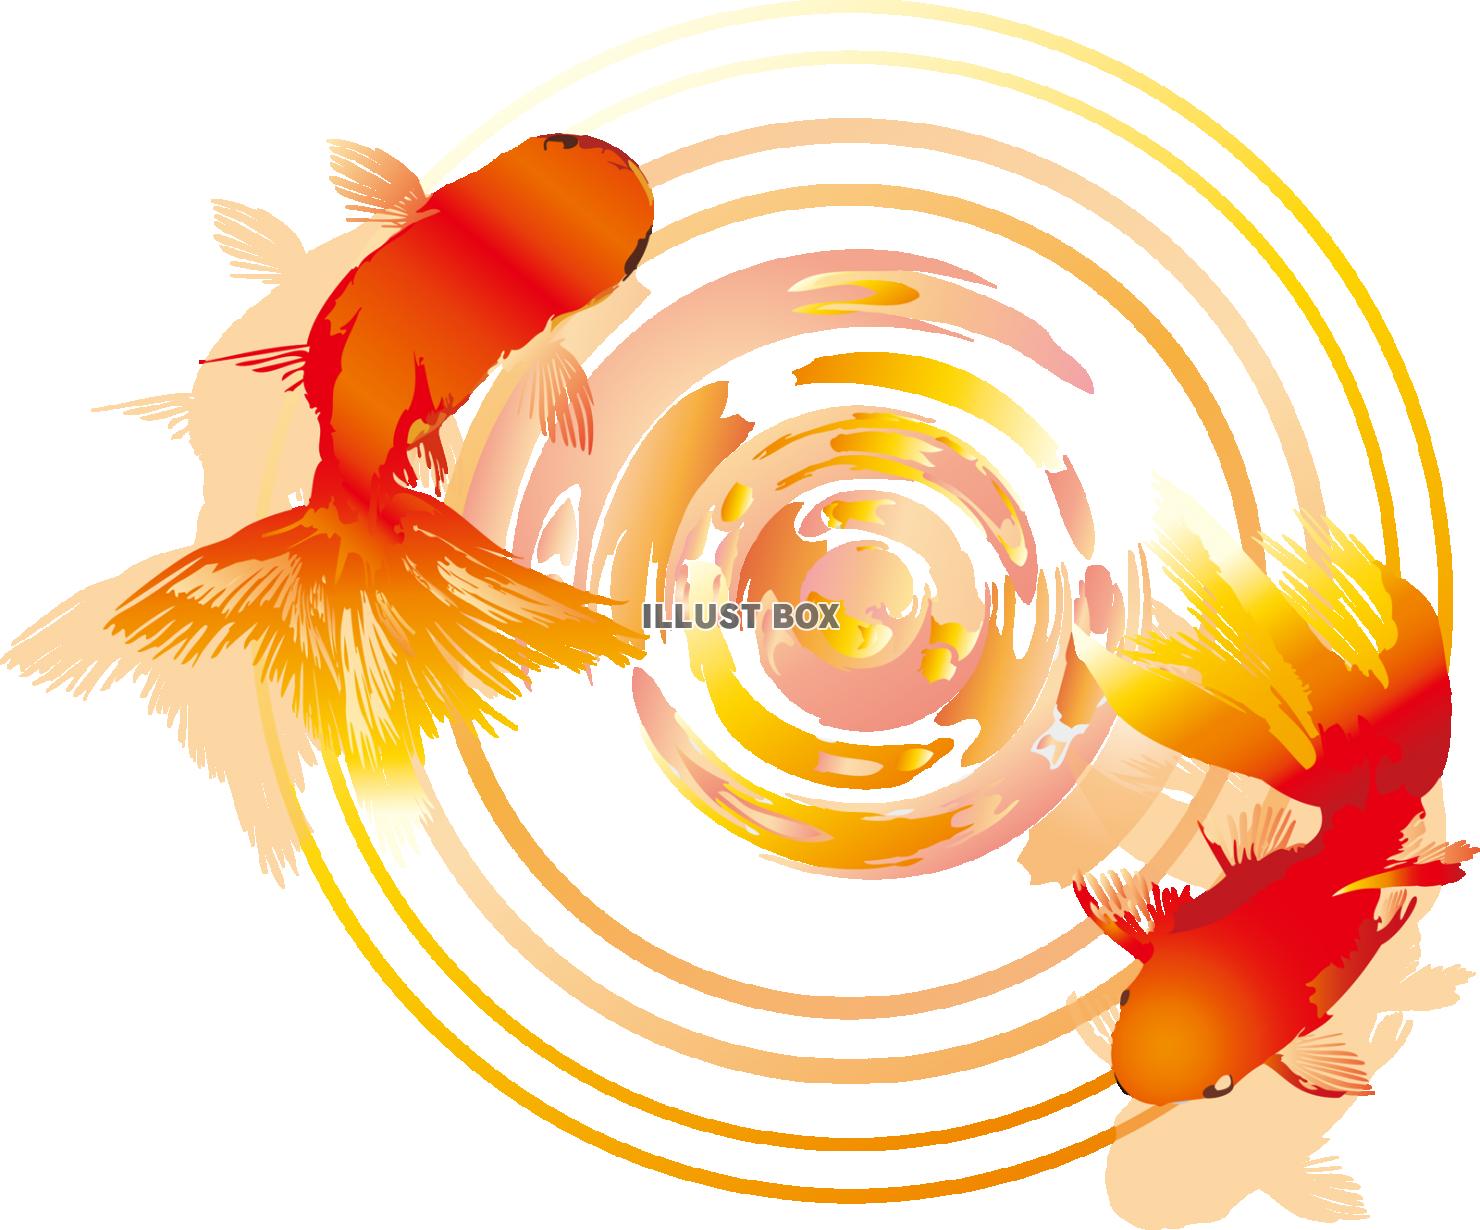 無料イラスト 透過png金魚水面秋祭り夏祭り和風縁日夕方暖色赤オレンジ動物